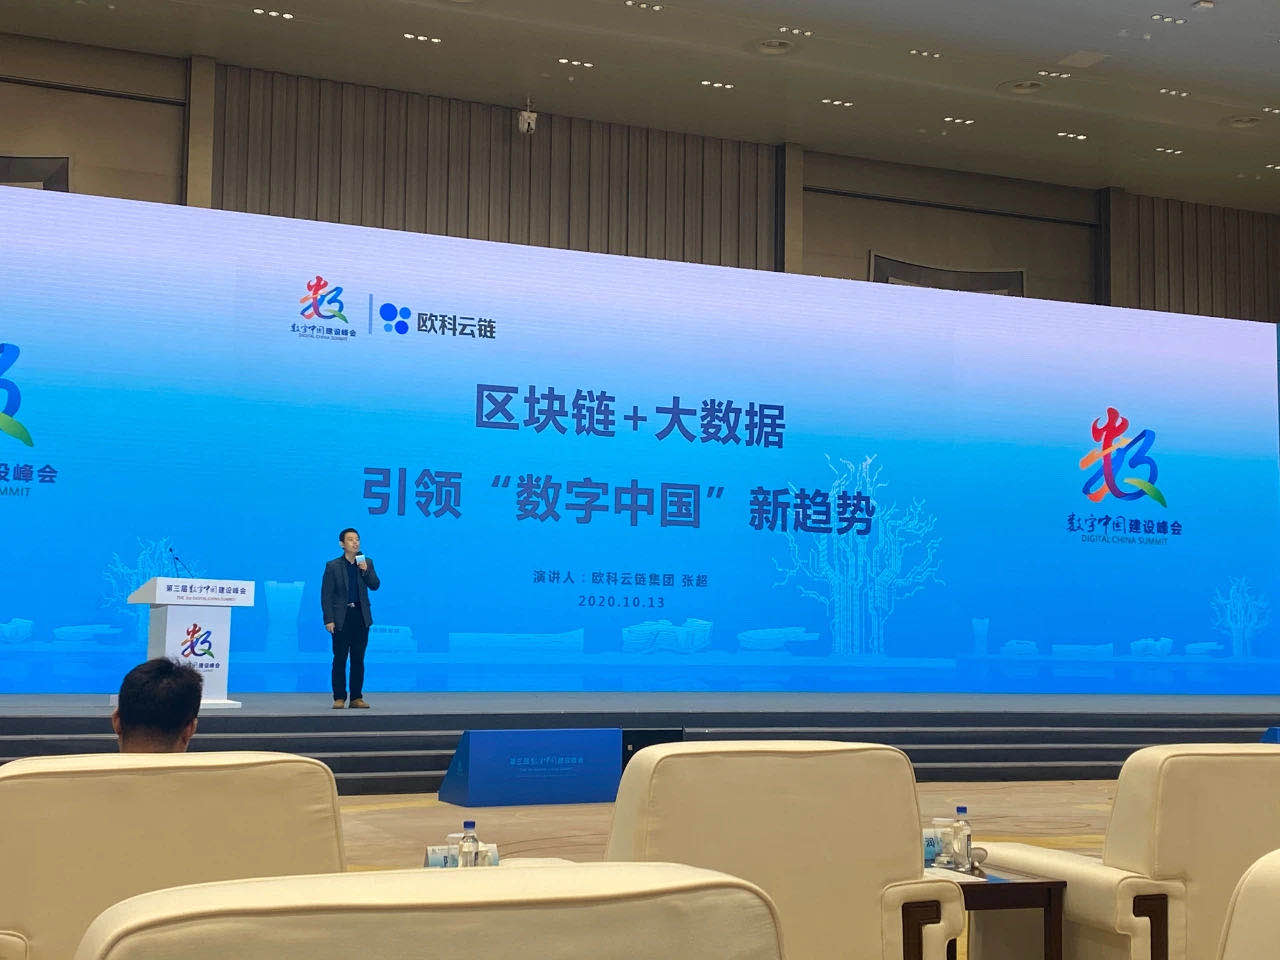 第六届数字中国建设峰会集中展示最新成果 分享发展经验